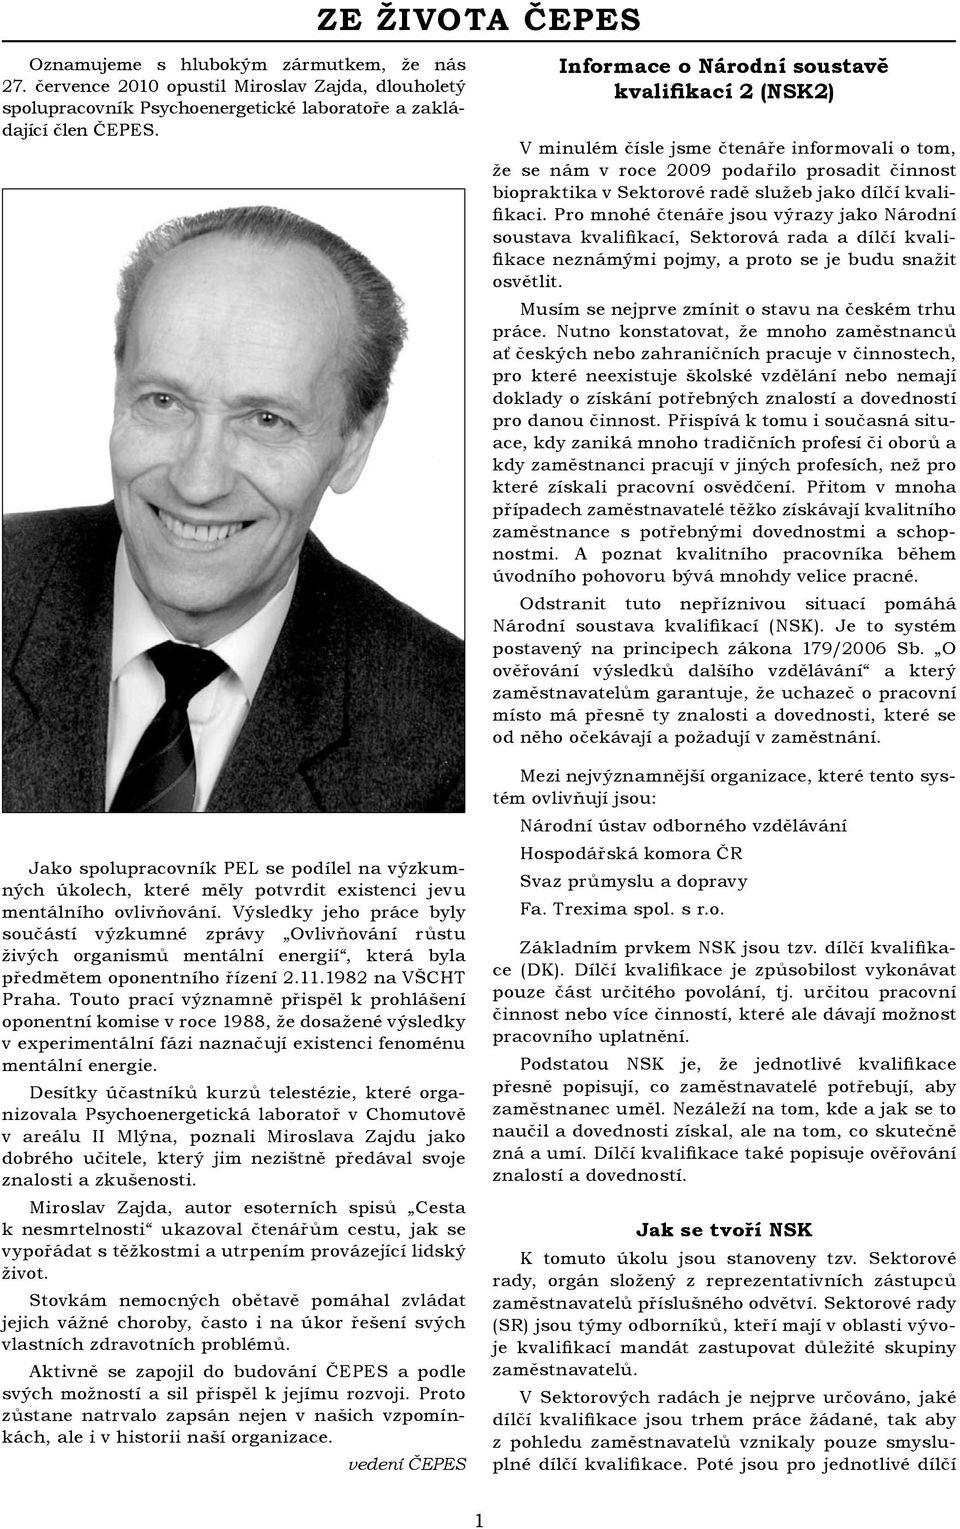 Výsledky jeho práce byly součástí výzkumné zprávy Ovlivňování růstu živých organismů mentální energií, která byla předmětem oponentního řízení 2.11.1982 na VŠCHT Praha.